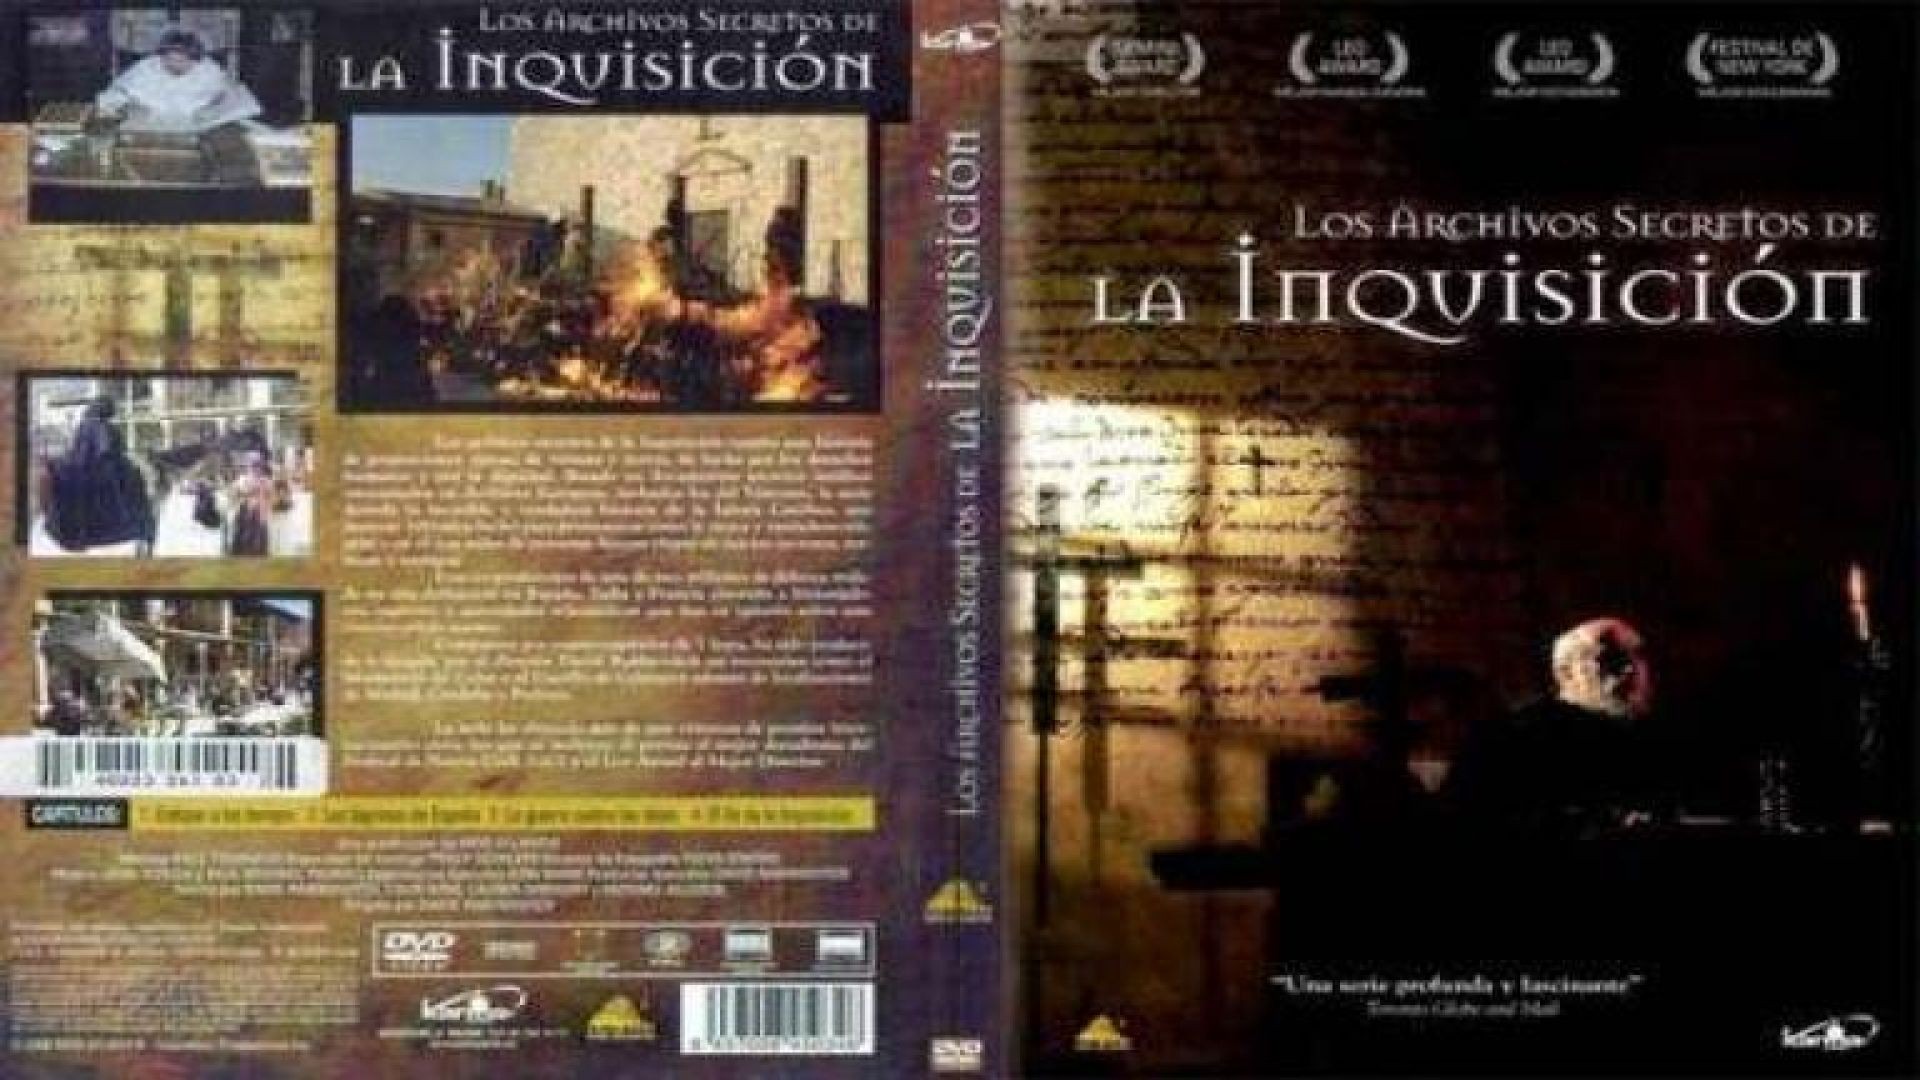 4/4 Los Archivos Secretos de la Inquisicion | El Fin de la Inquisicion - Santa Inquisicion